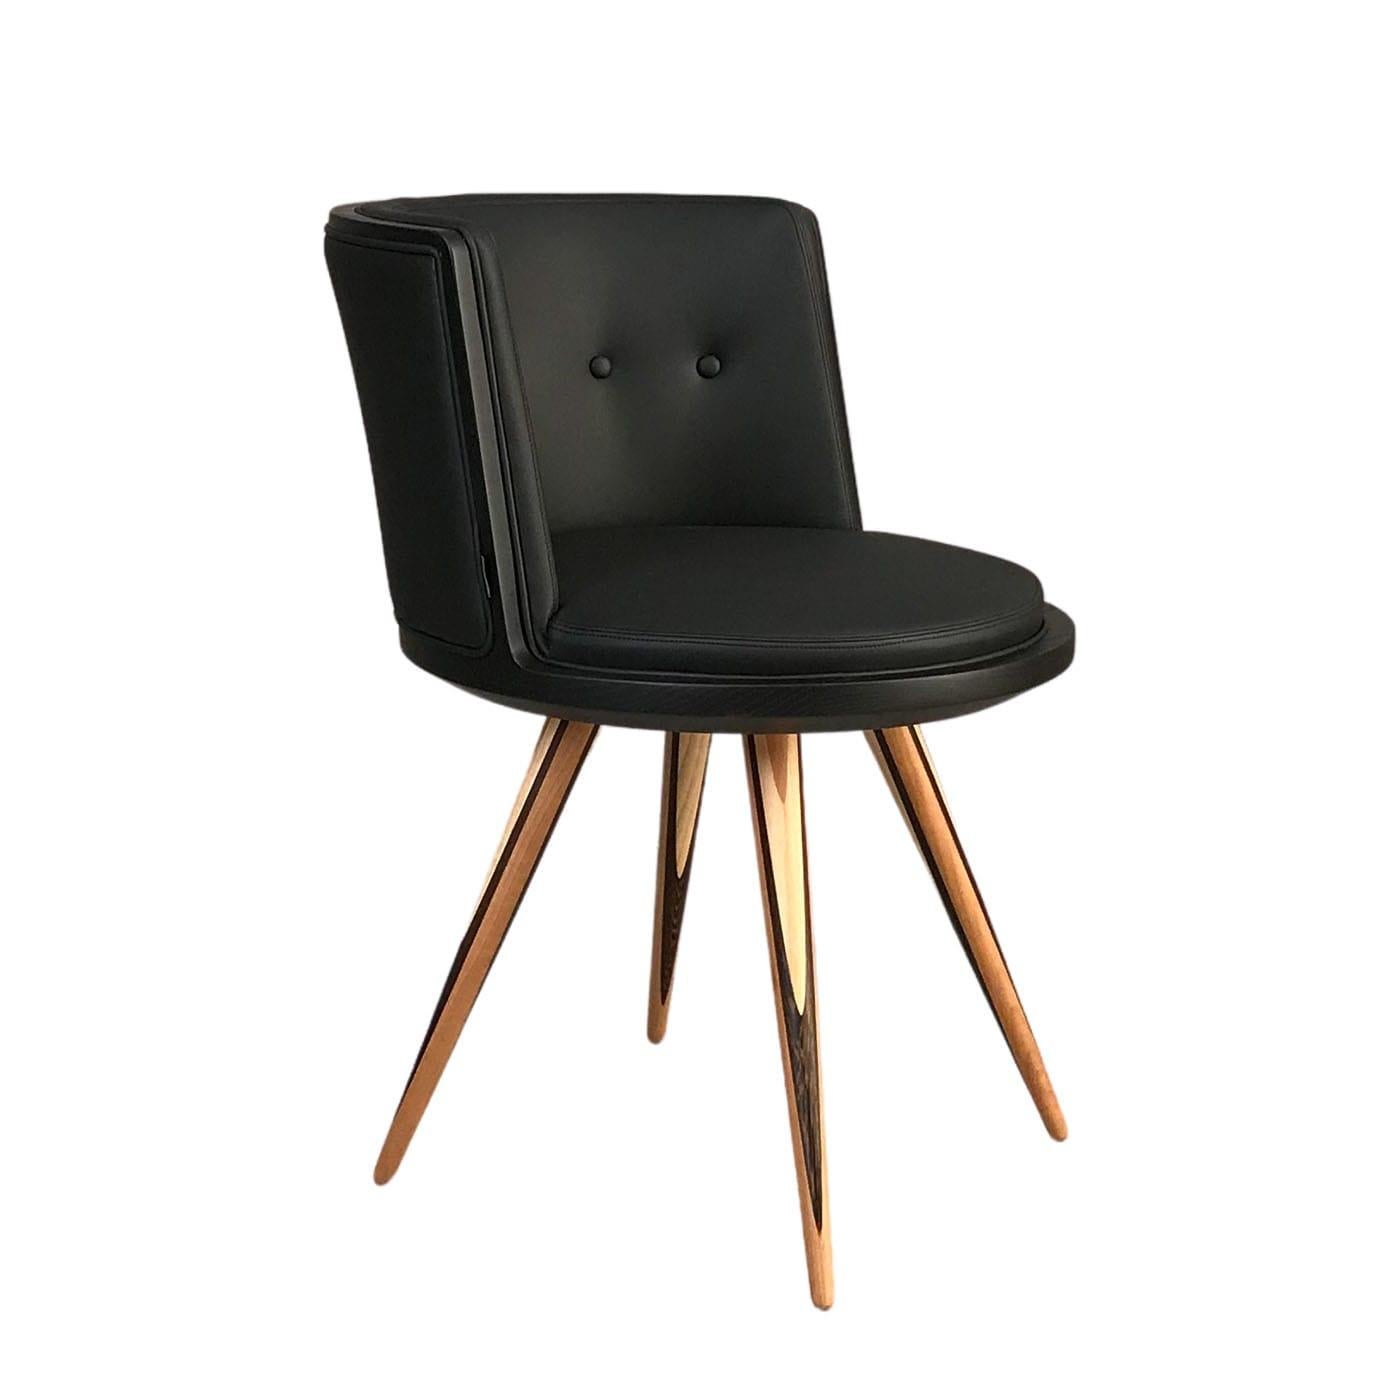 Als eleganter Akzent in einem modernen Arbeits- oder Wohnzimmer strahlt dieser großartige Stuhl Komfort und Raffinesse aus. Handgefertigt aus schwarz lackiertem Eschenholz, ist der runde Sitz weich gepolstert und mit schwarzem Leder gepolstert,